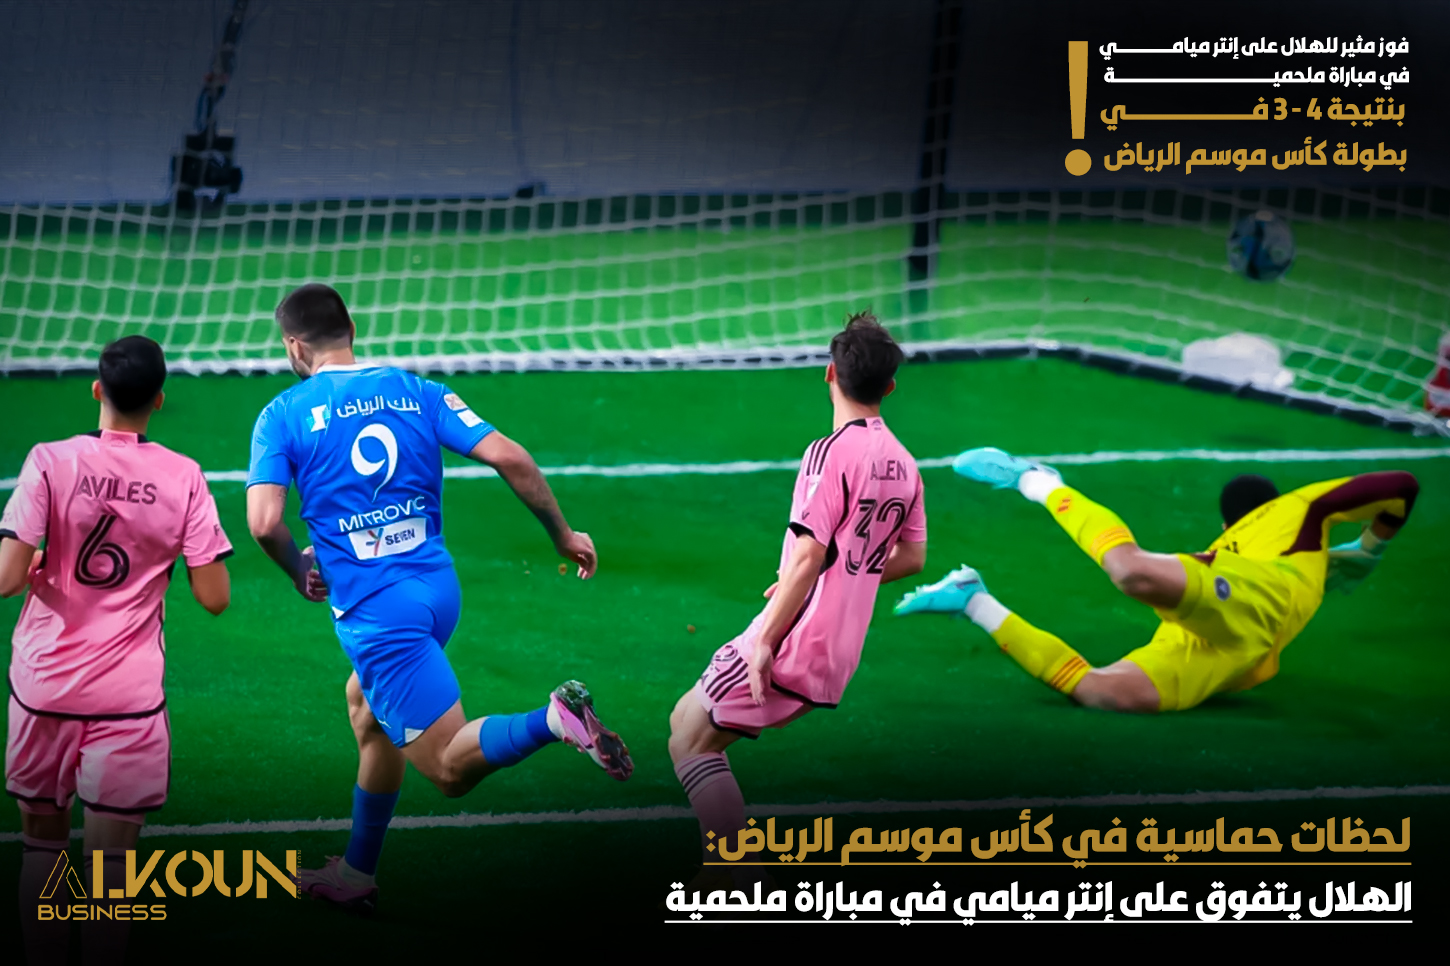 "لحظات حماسية في كأس موسم الرياض: الهلال يتفوق على إنتر ميامي في مباراة ملحمية"